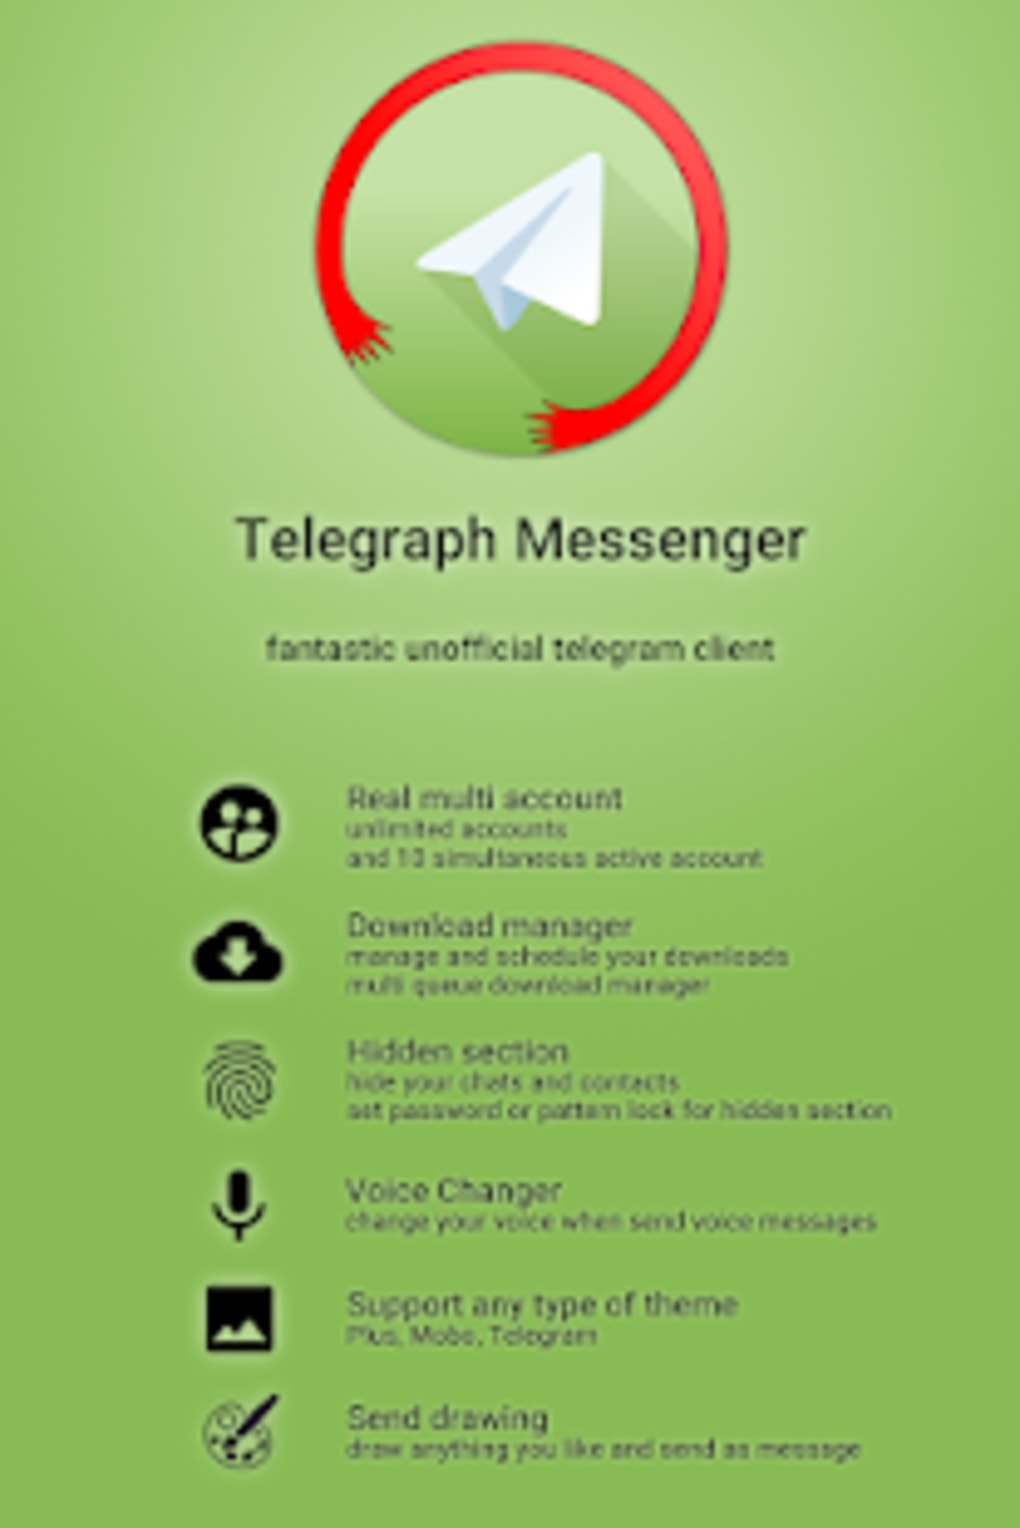 Языки для телеграмма на андроид на русском скачать бесплатно фото 71